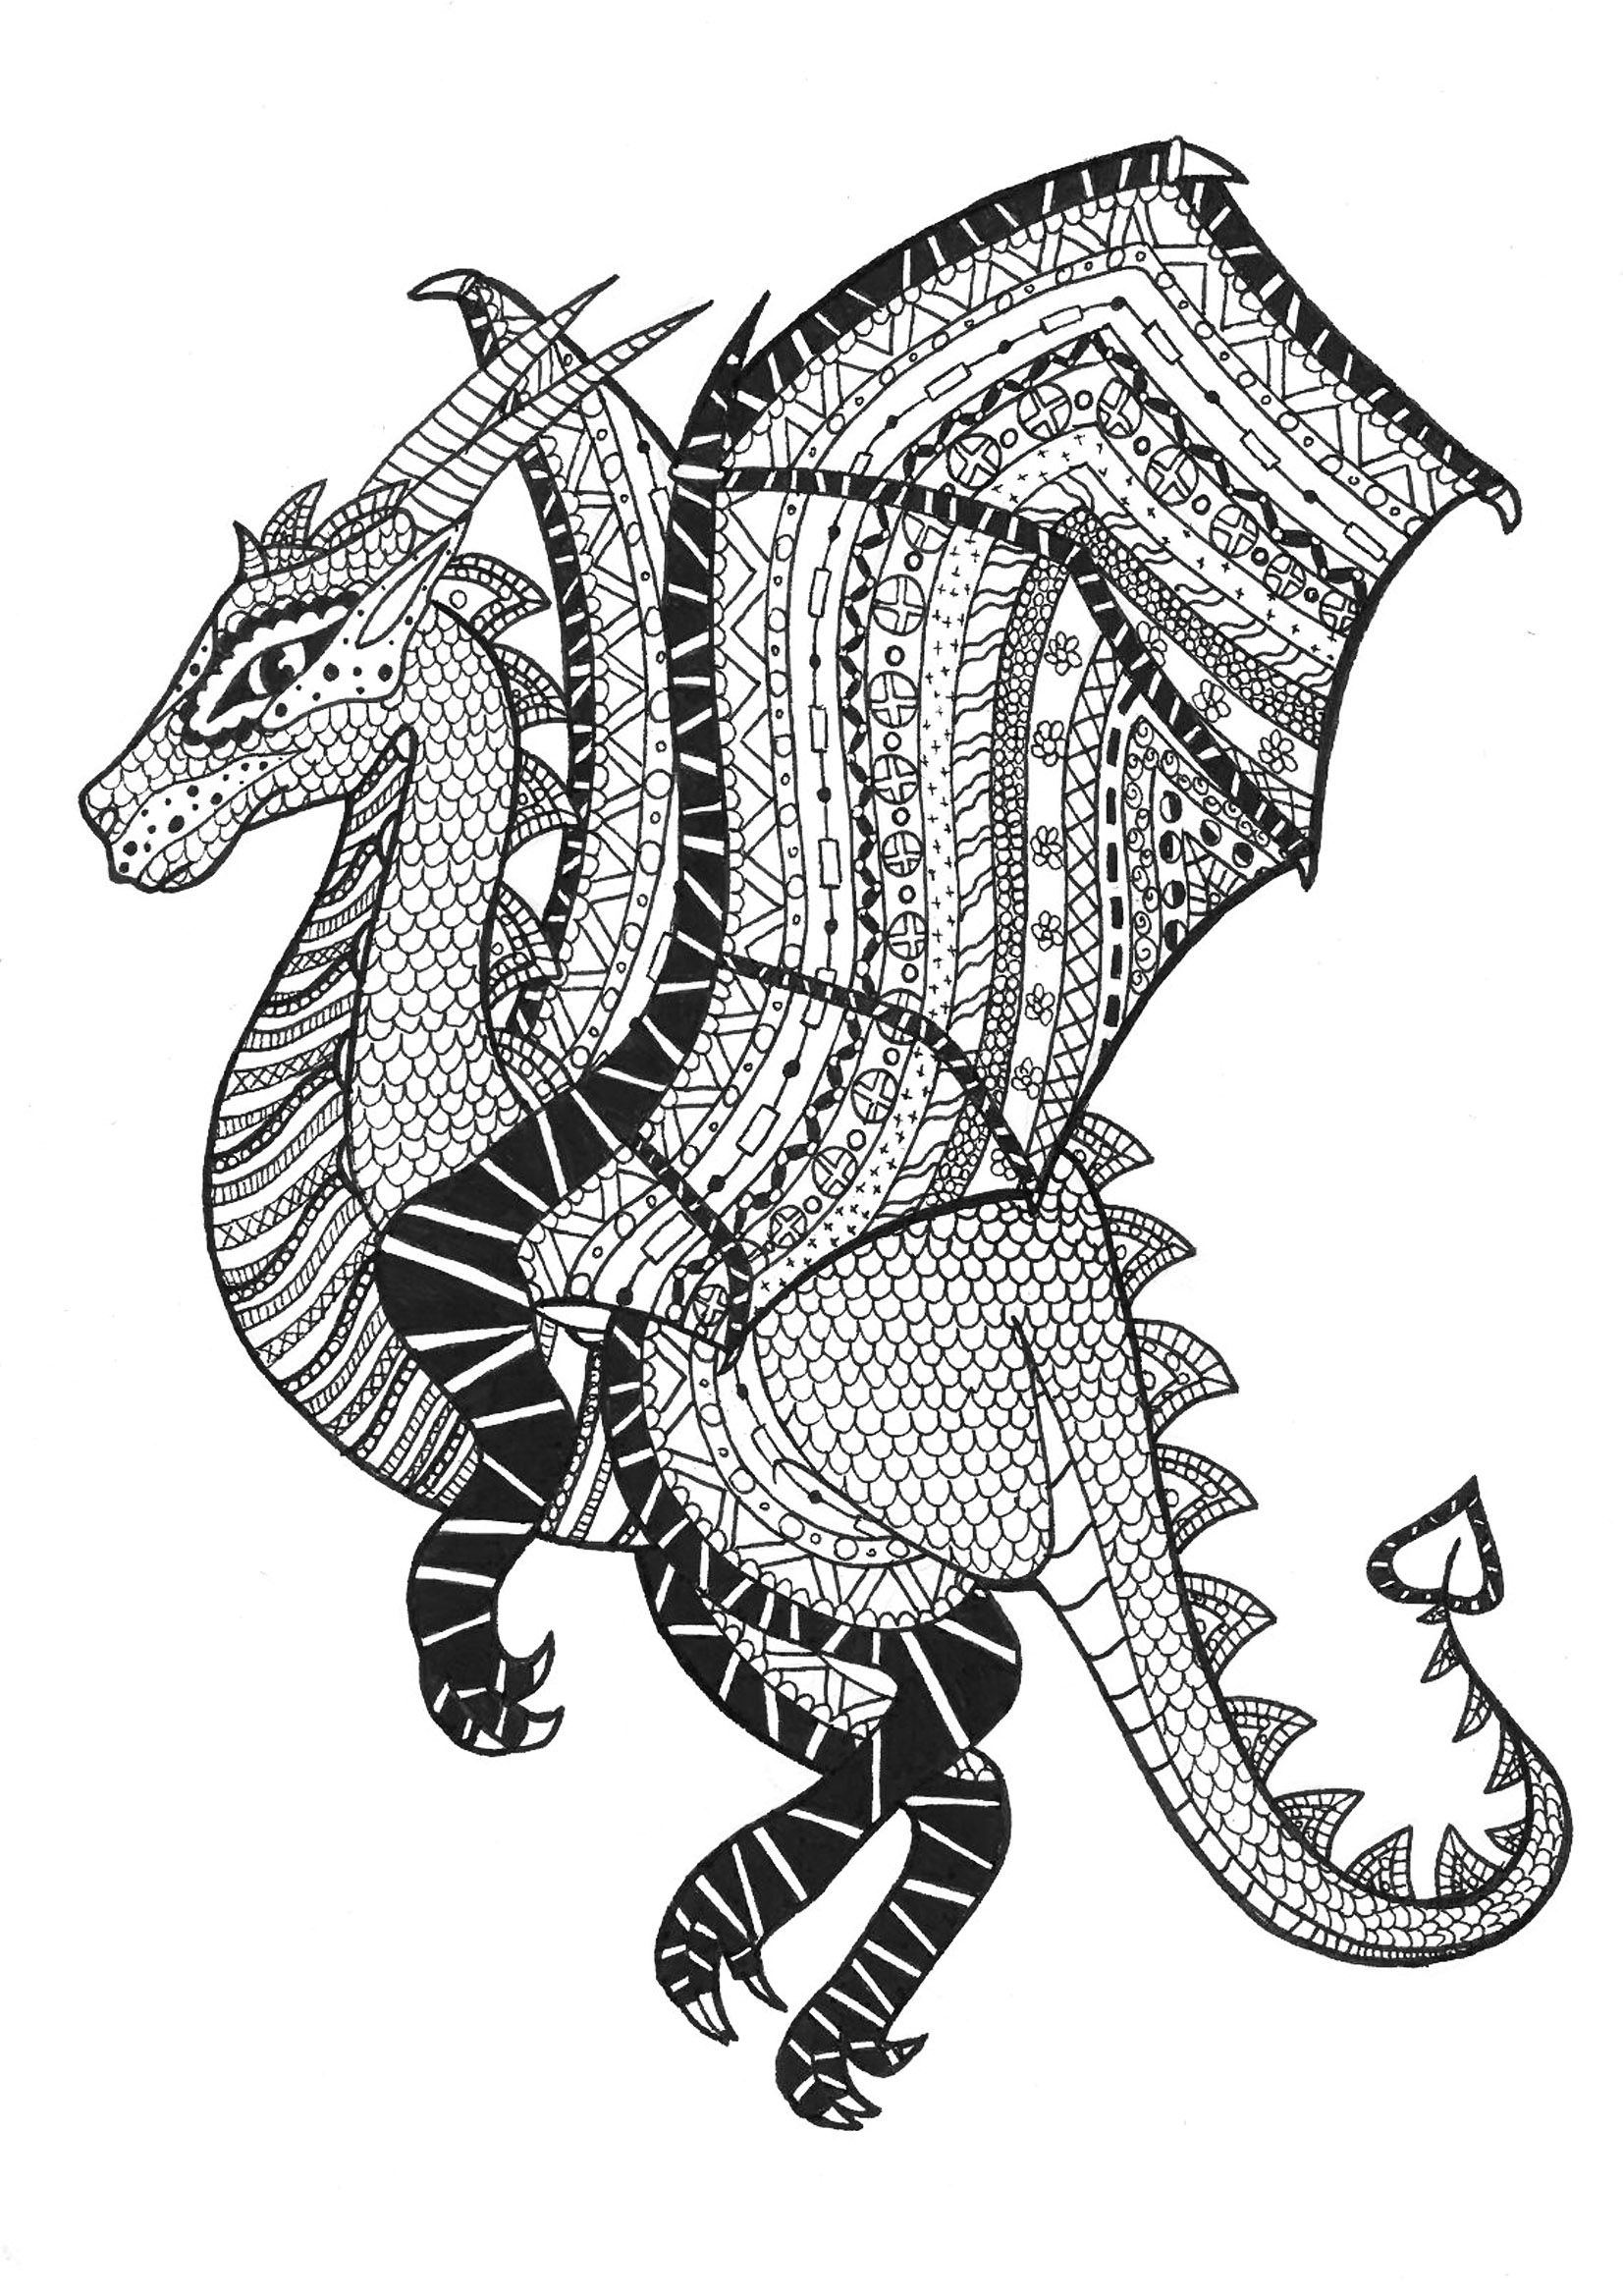 Dragão em estilo zentangle. Muitos padrões para colorir nas asas e no corpo deste dragão